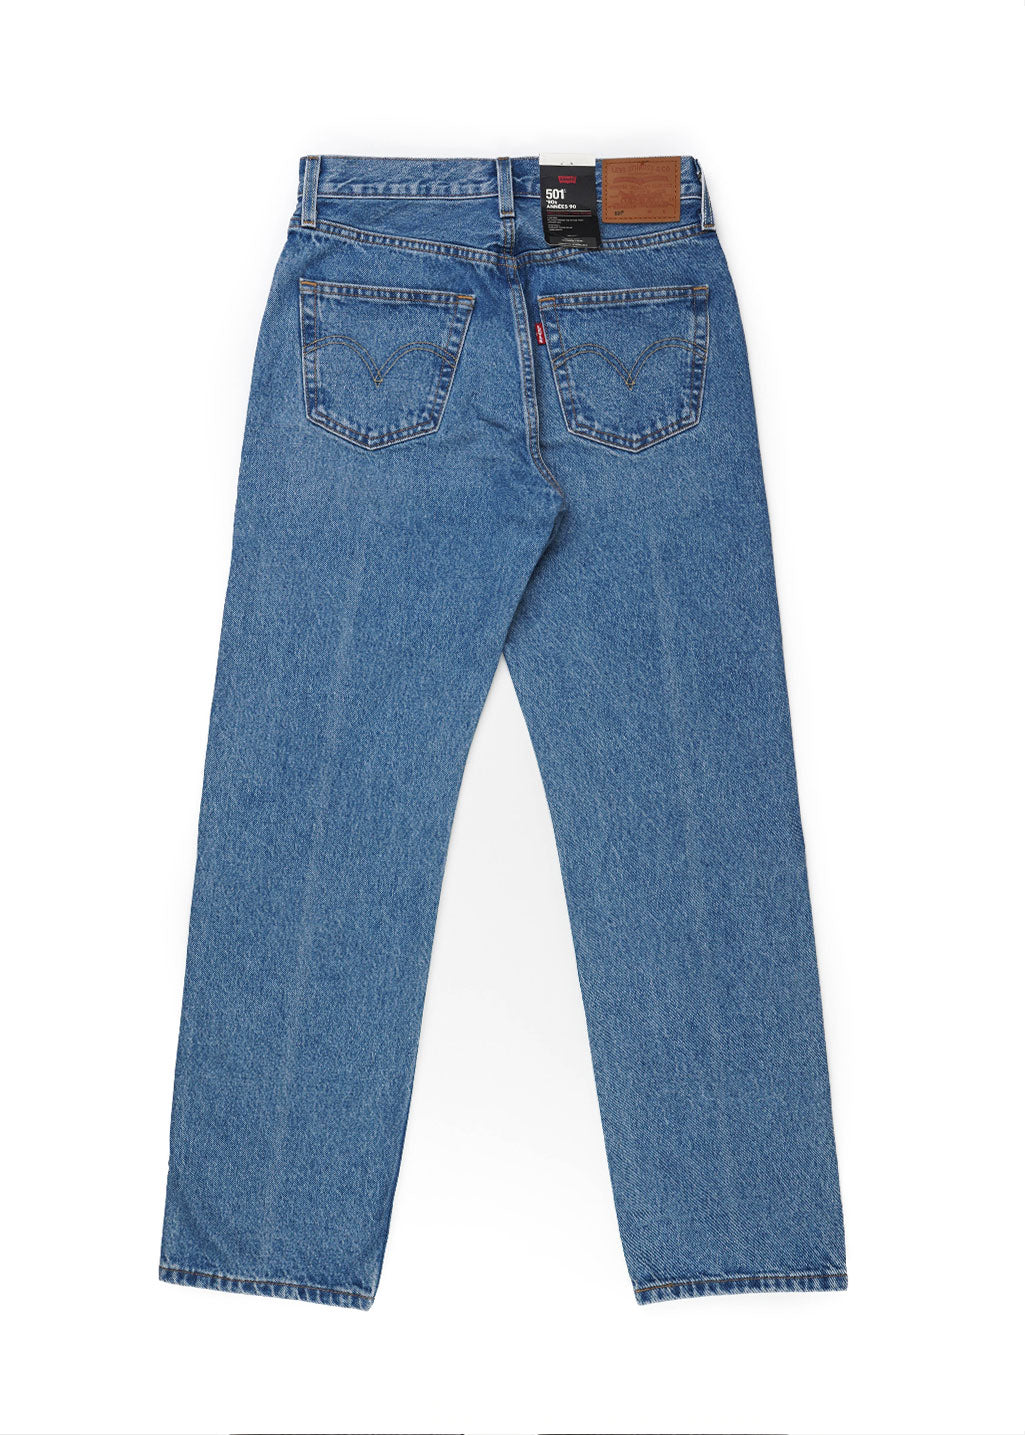 Levi's Plus 90s 501 jeans